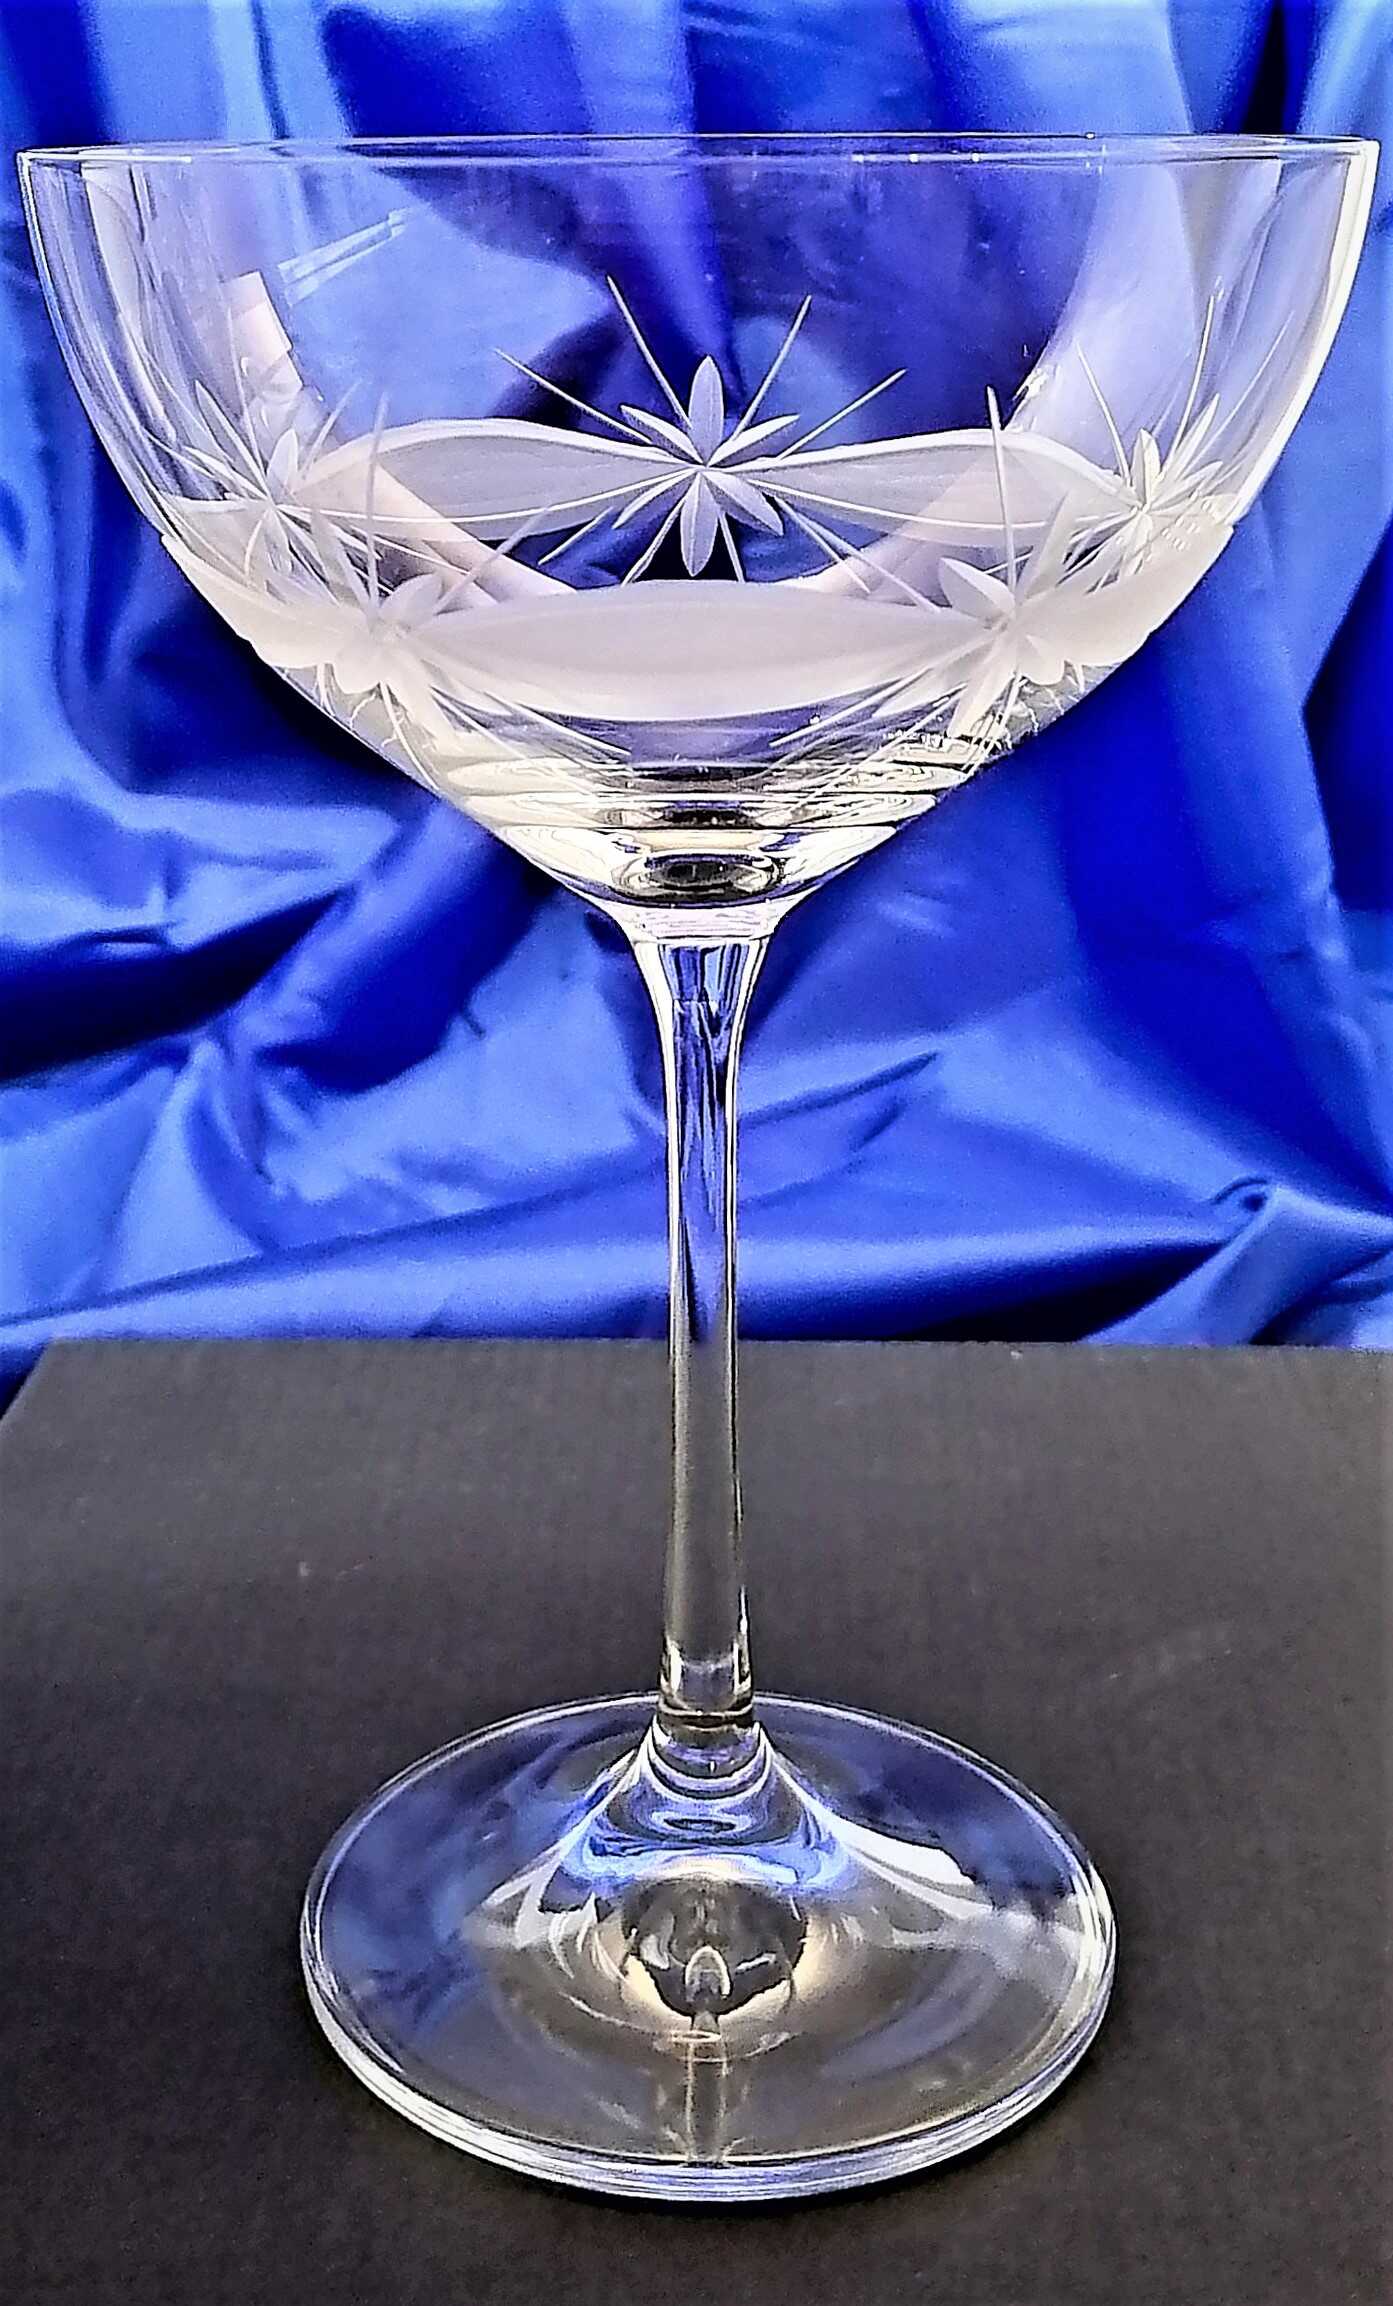 LsG-Kristall Champagner Schale Kristallgläser Hand geschliffen Kante Ssch-167 340 ml 2 Stück.